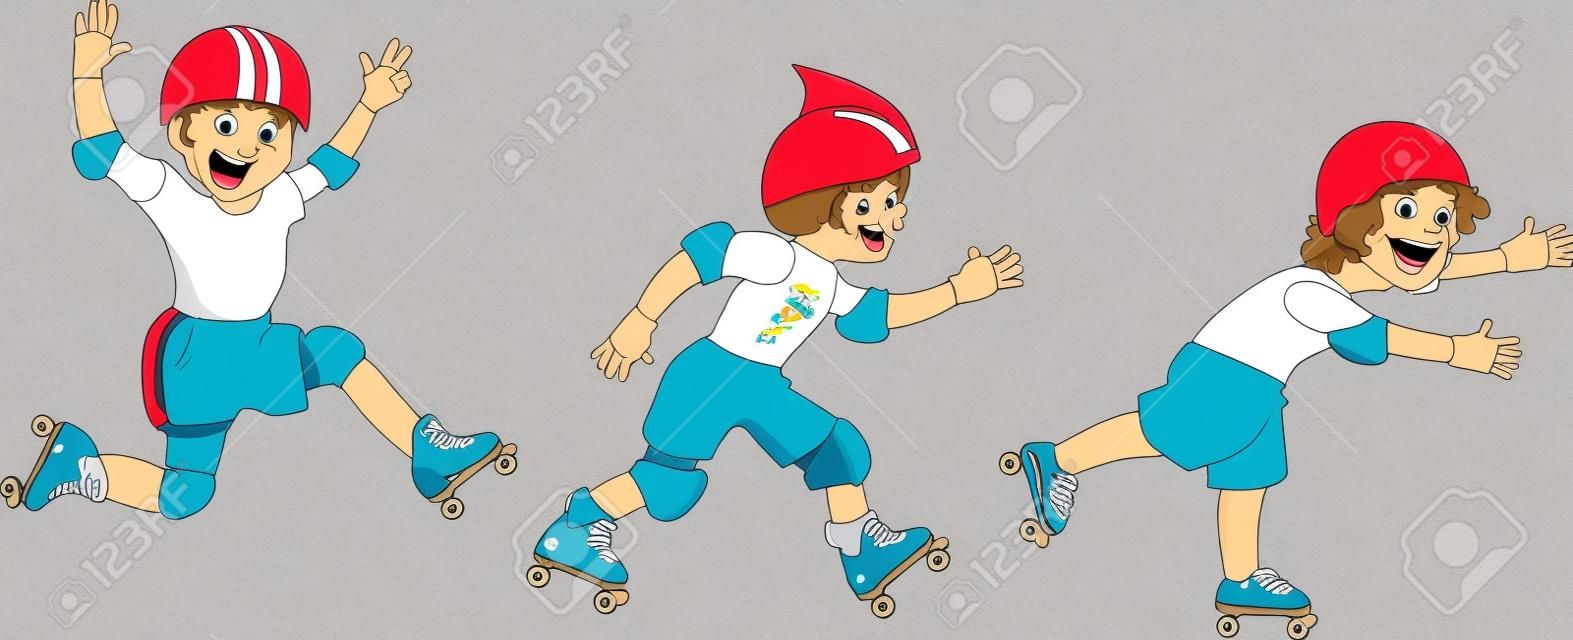 Tre piccoli personaggi dei cartoni animati ragazzi pattinaggio a rotelle, isolato su bianco